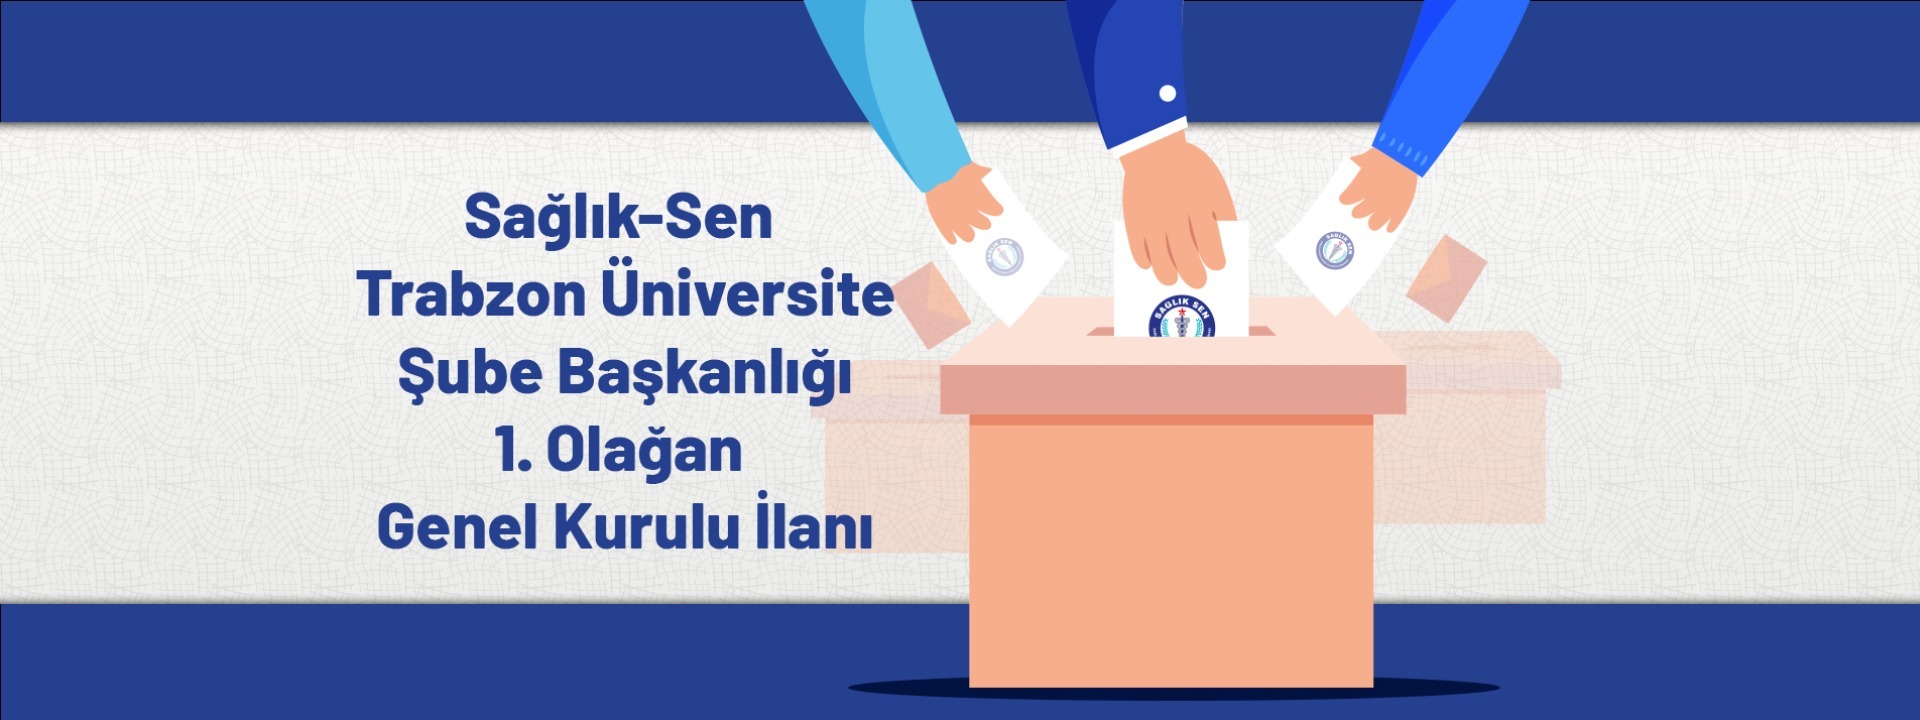 Sağlık-Sen Trabzon Üniversite Şube Başkanlığı 1. Olağan Genel Kurul İlanı